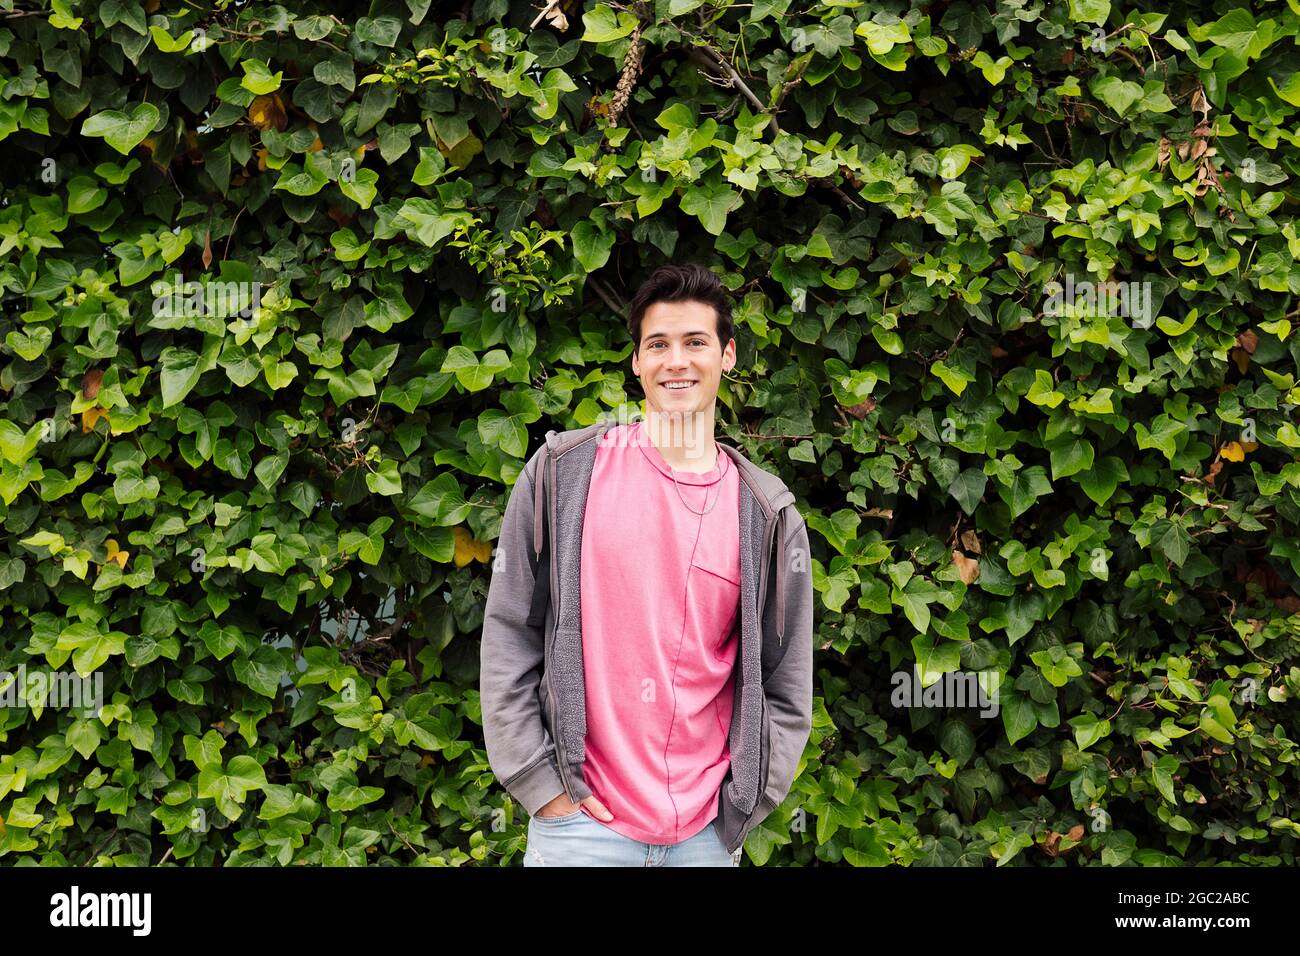 Freundlicher, lächelnder Teenager, der auf einem grünen Pflanzenhintergrund die Kamera anschaut, Konzept menschlicher Ausdrücke und Emotionen, Platz für Text kopieren Stockfoto